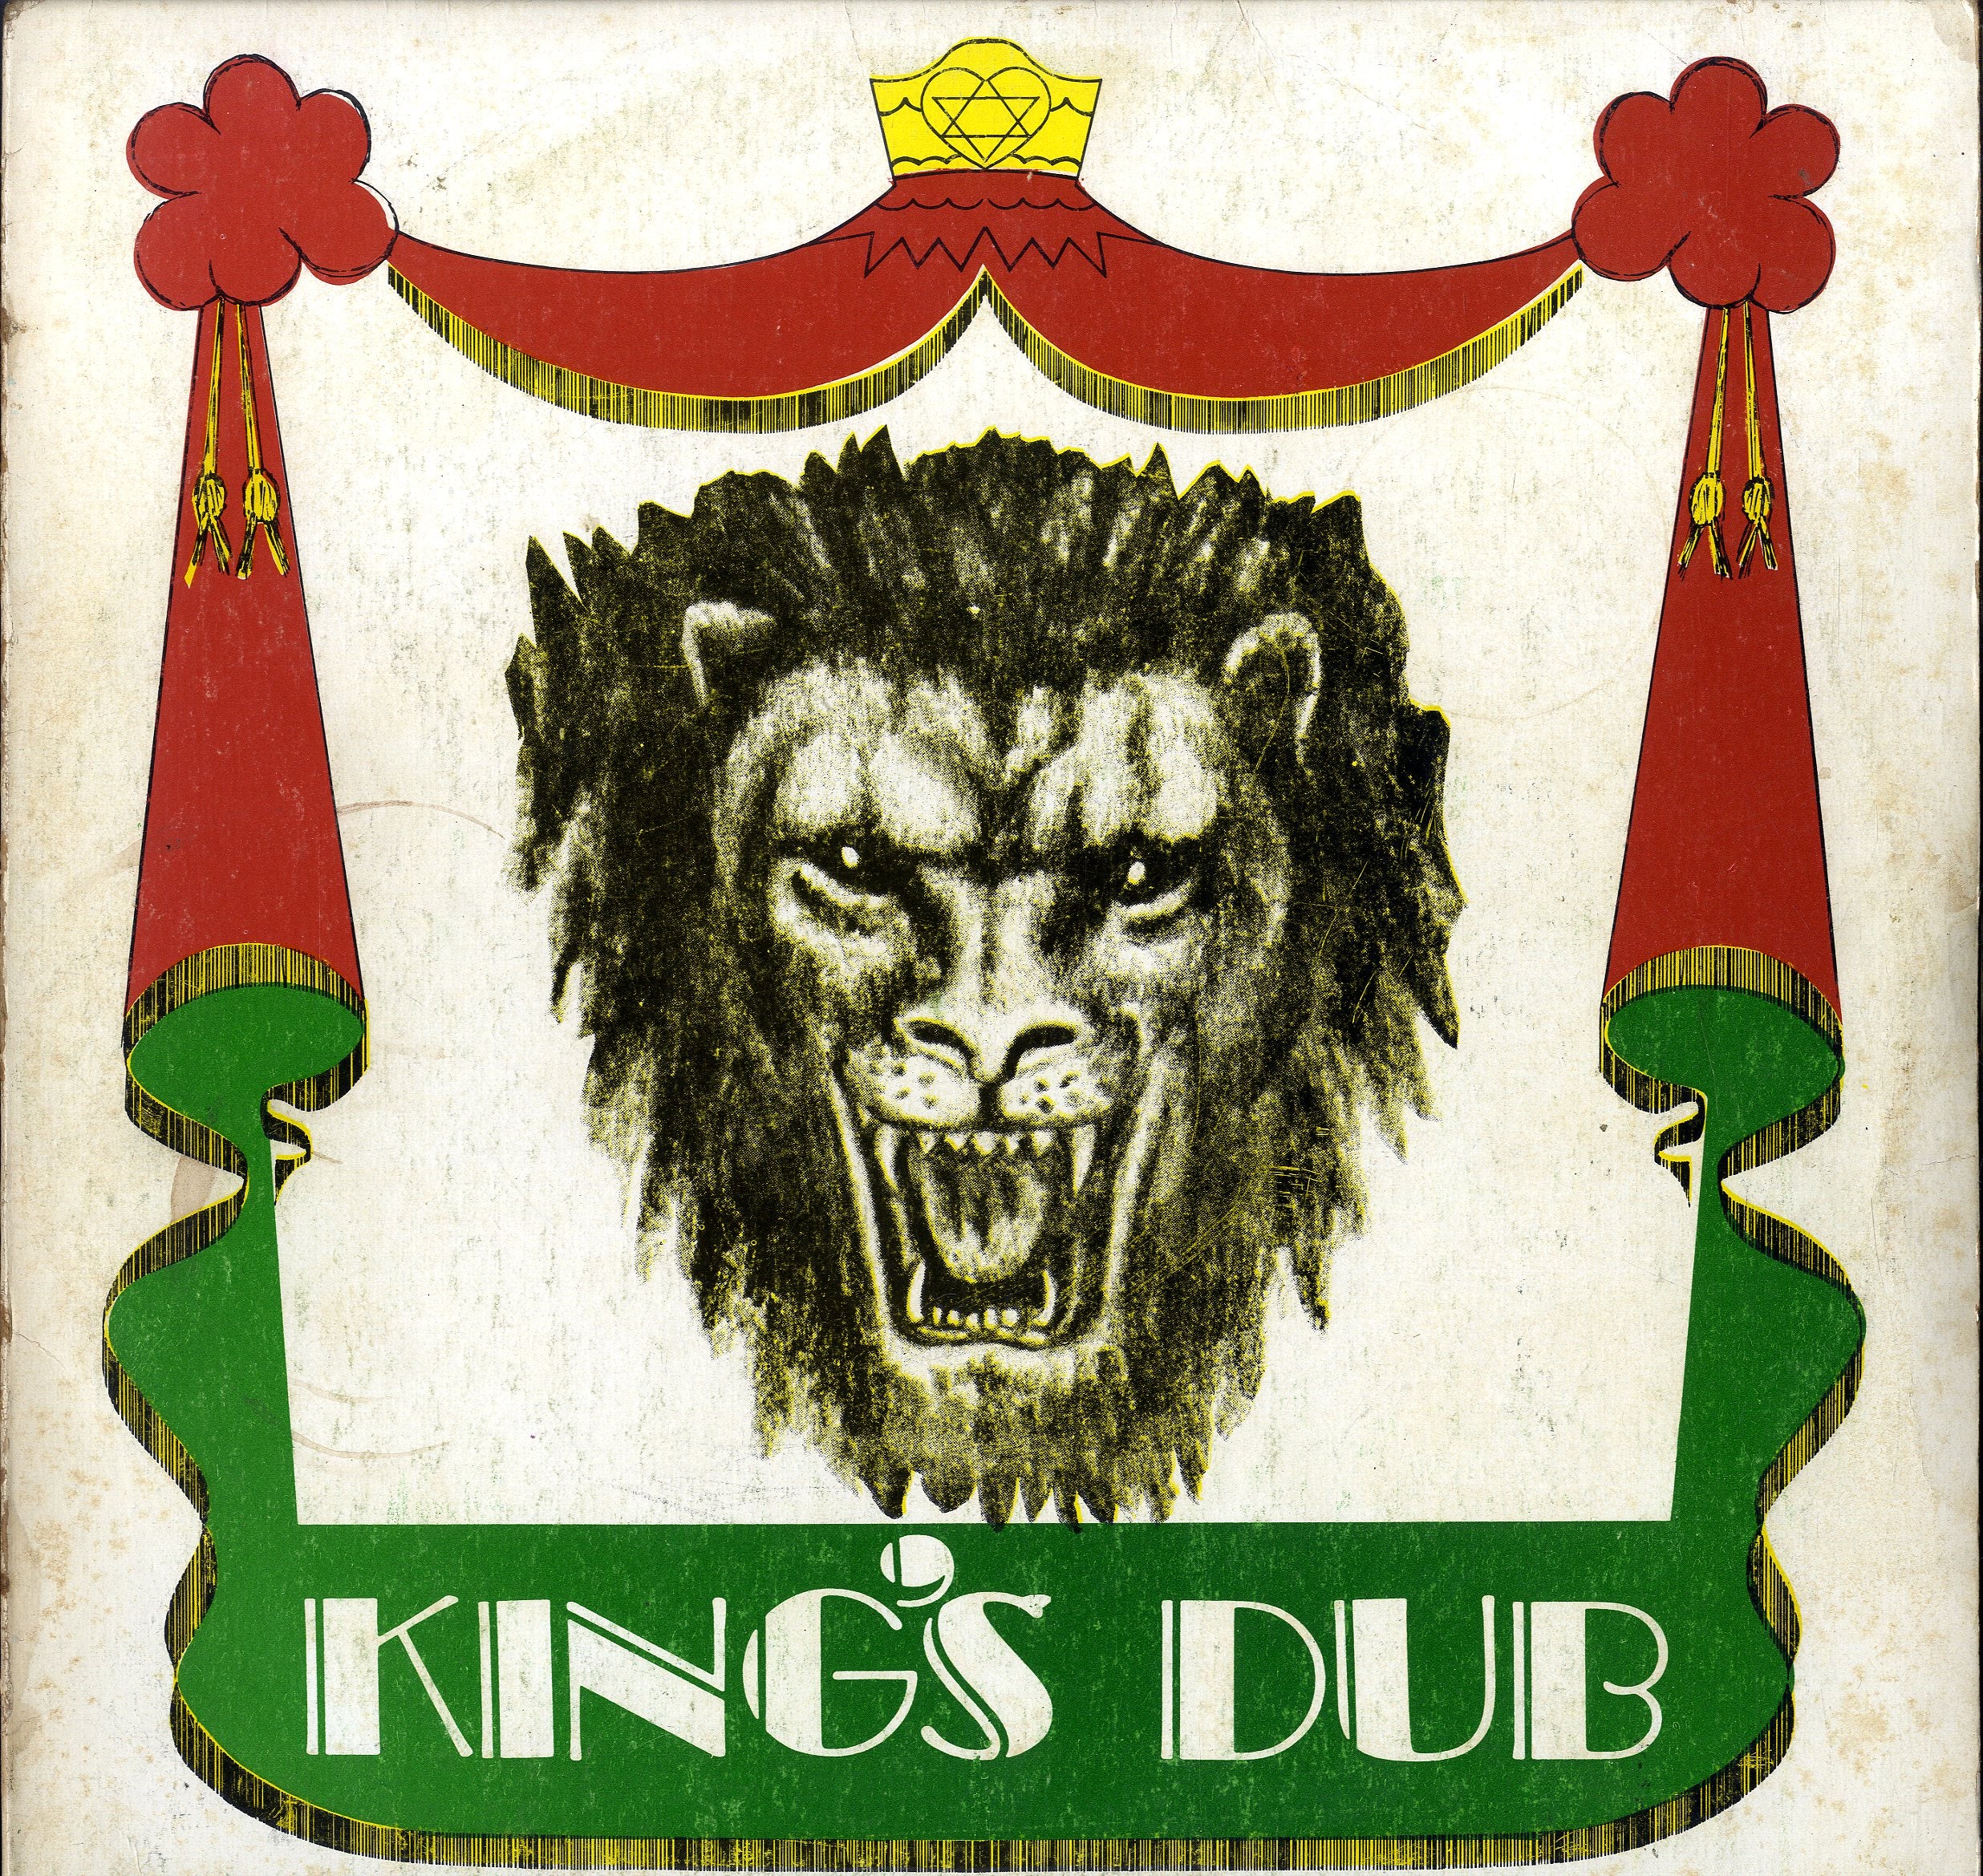 DUDLLEY SWABY PRESENTS [Kings Dub]